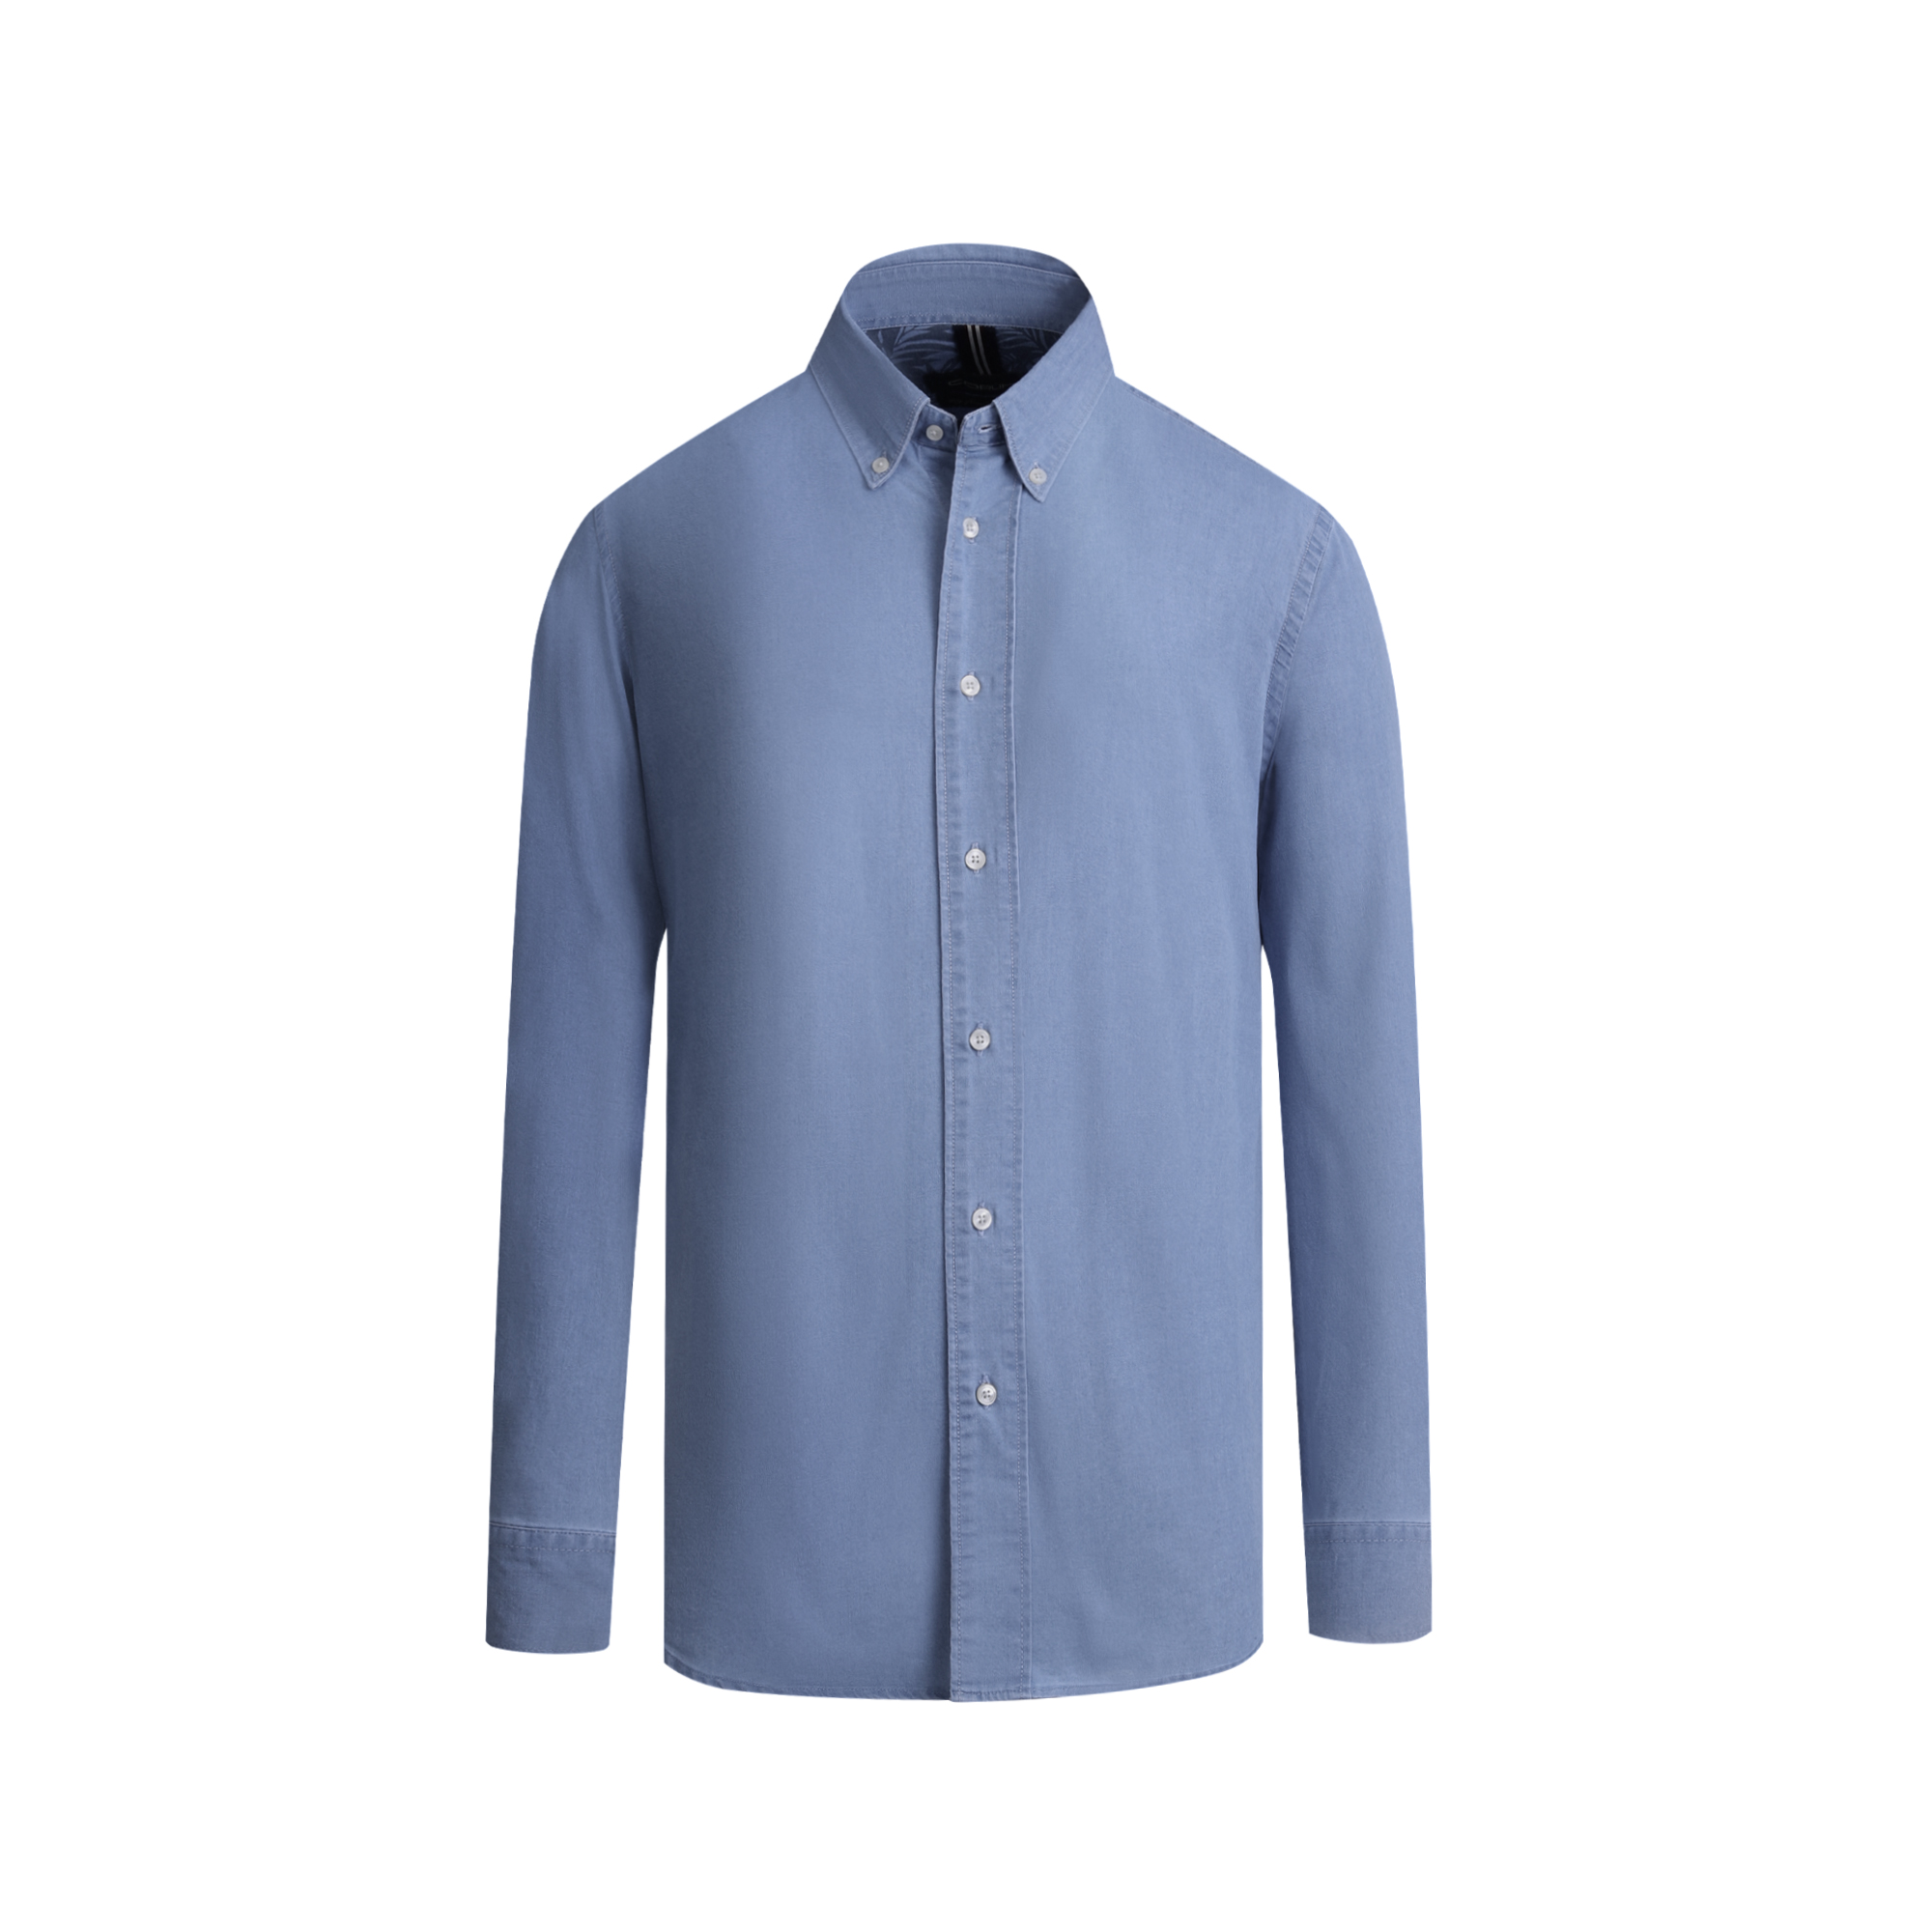 نکته خرید - قیمت روز پیراهن آستین بلند مردانه کروم مدل جین 2410153 خرید